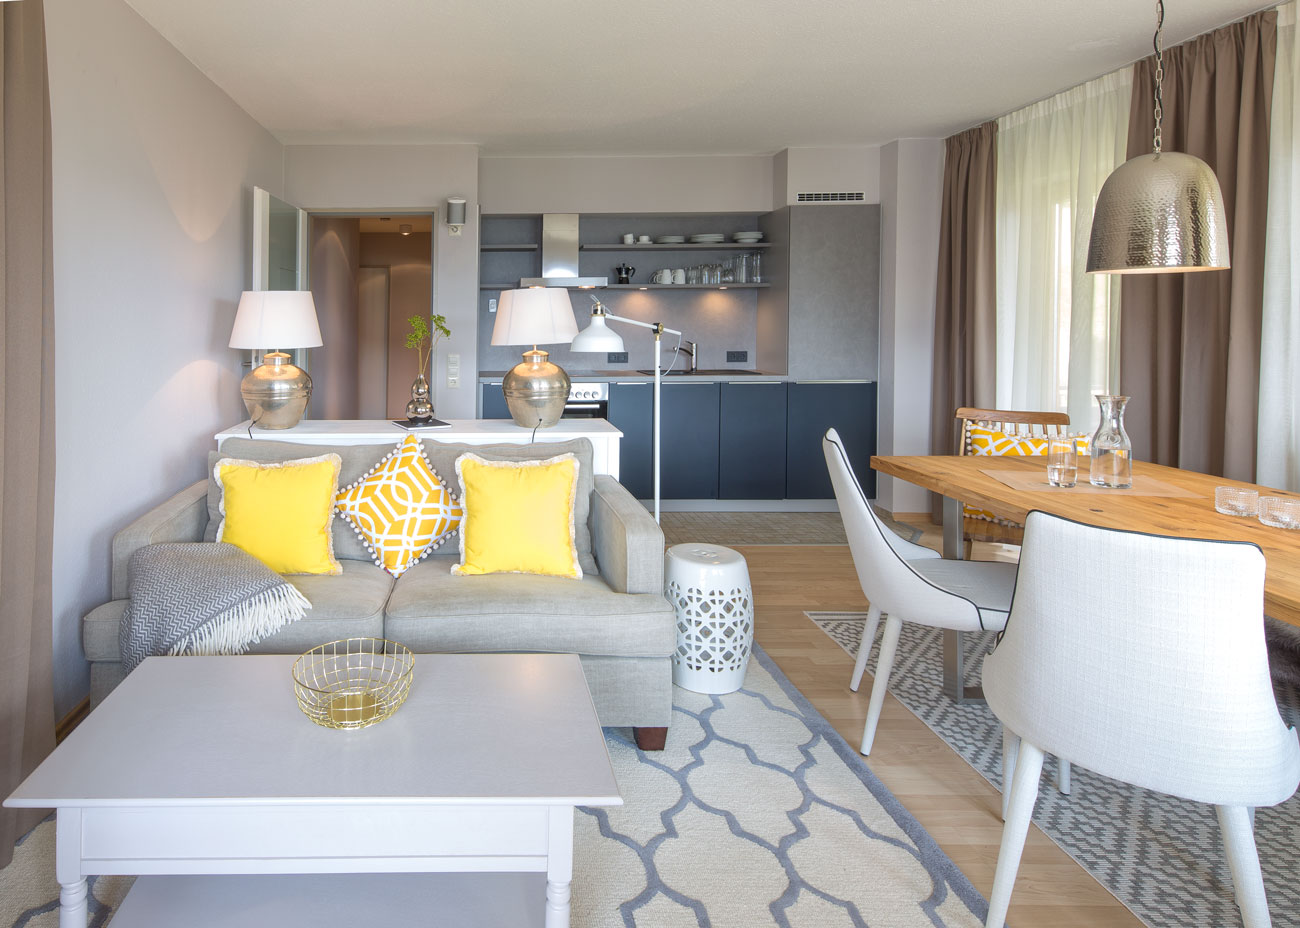 Wohnung gemütlich einrichten wohnezimmer küche taupe couch holztisch stühle leuchte metall